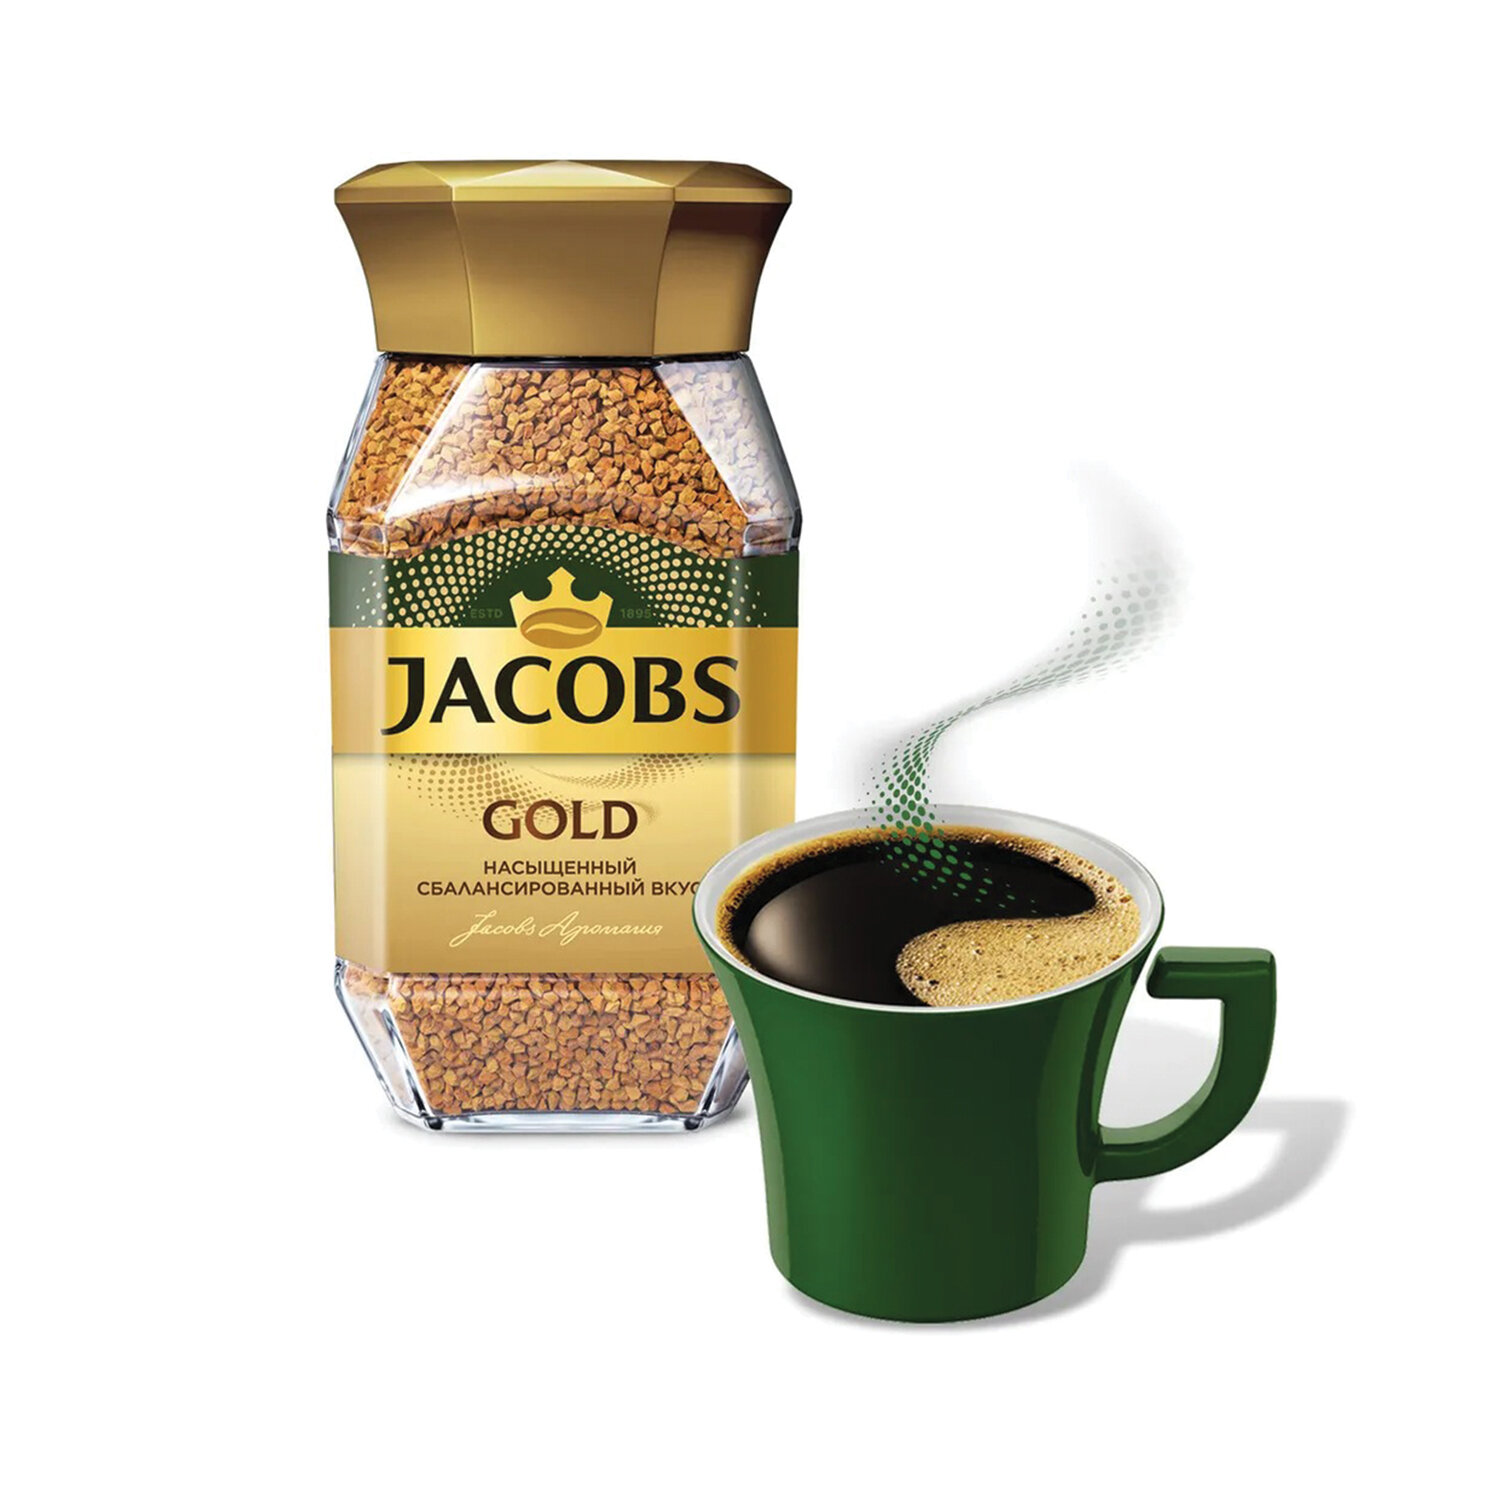 Вода кофе растворимый. Кофе растворимый Jacobs Monarch intense 95г. Кофе Якобс Голд 190 гр. Кофе Якобс Монарх 190 гр стекло. Кофе Якобс Монарх Голд 95 г.